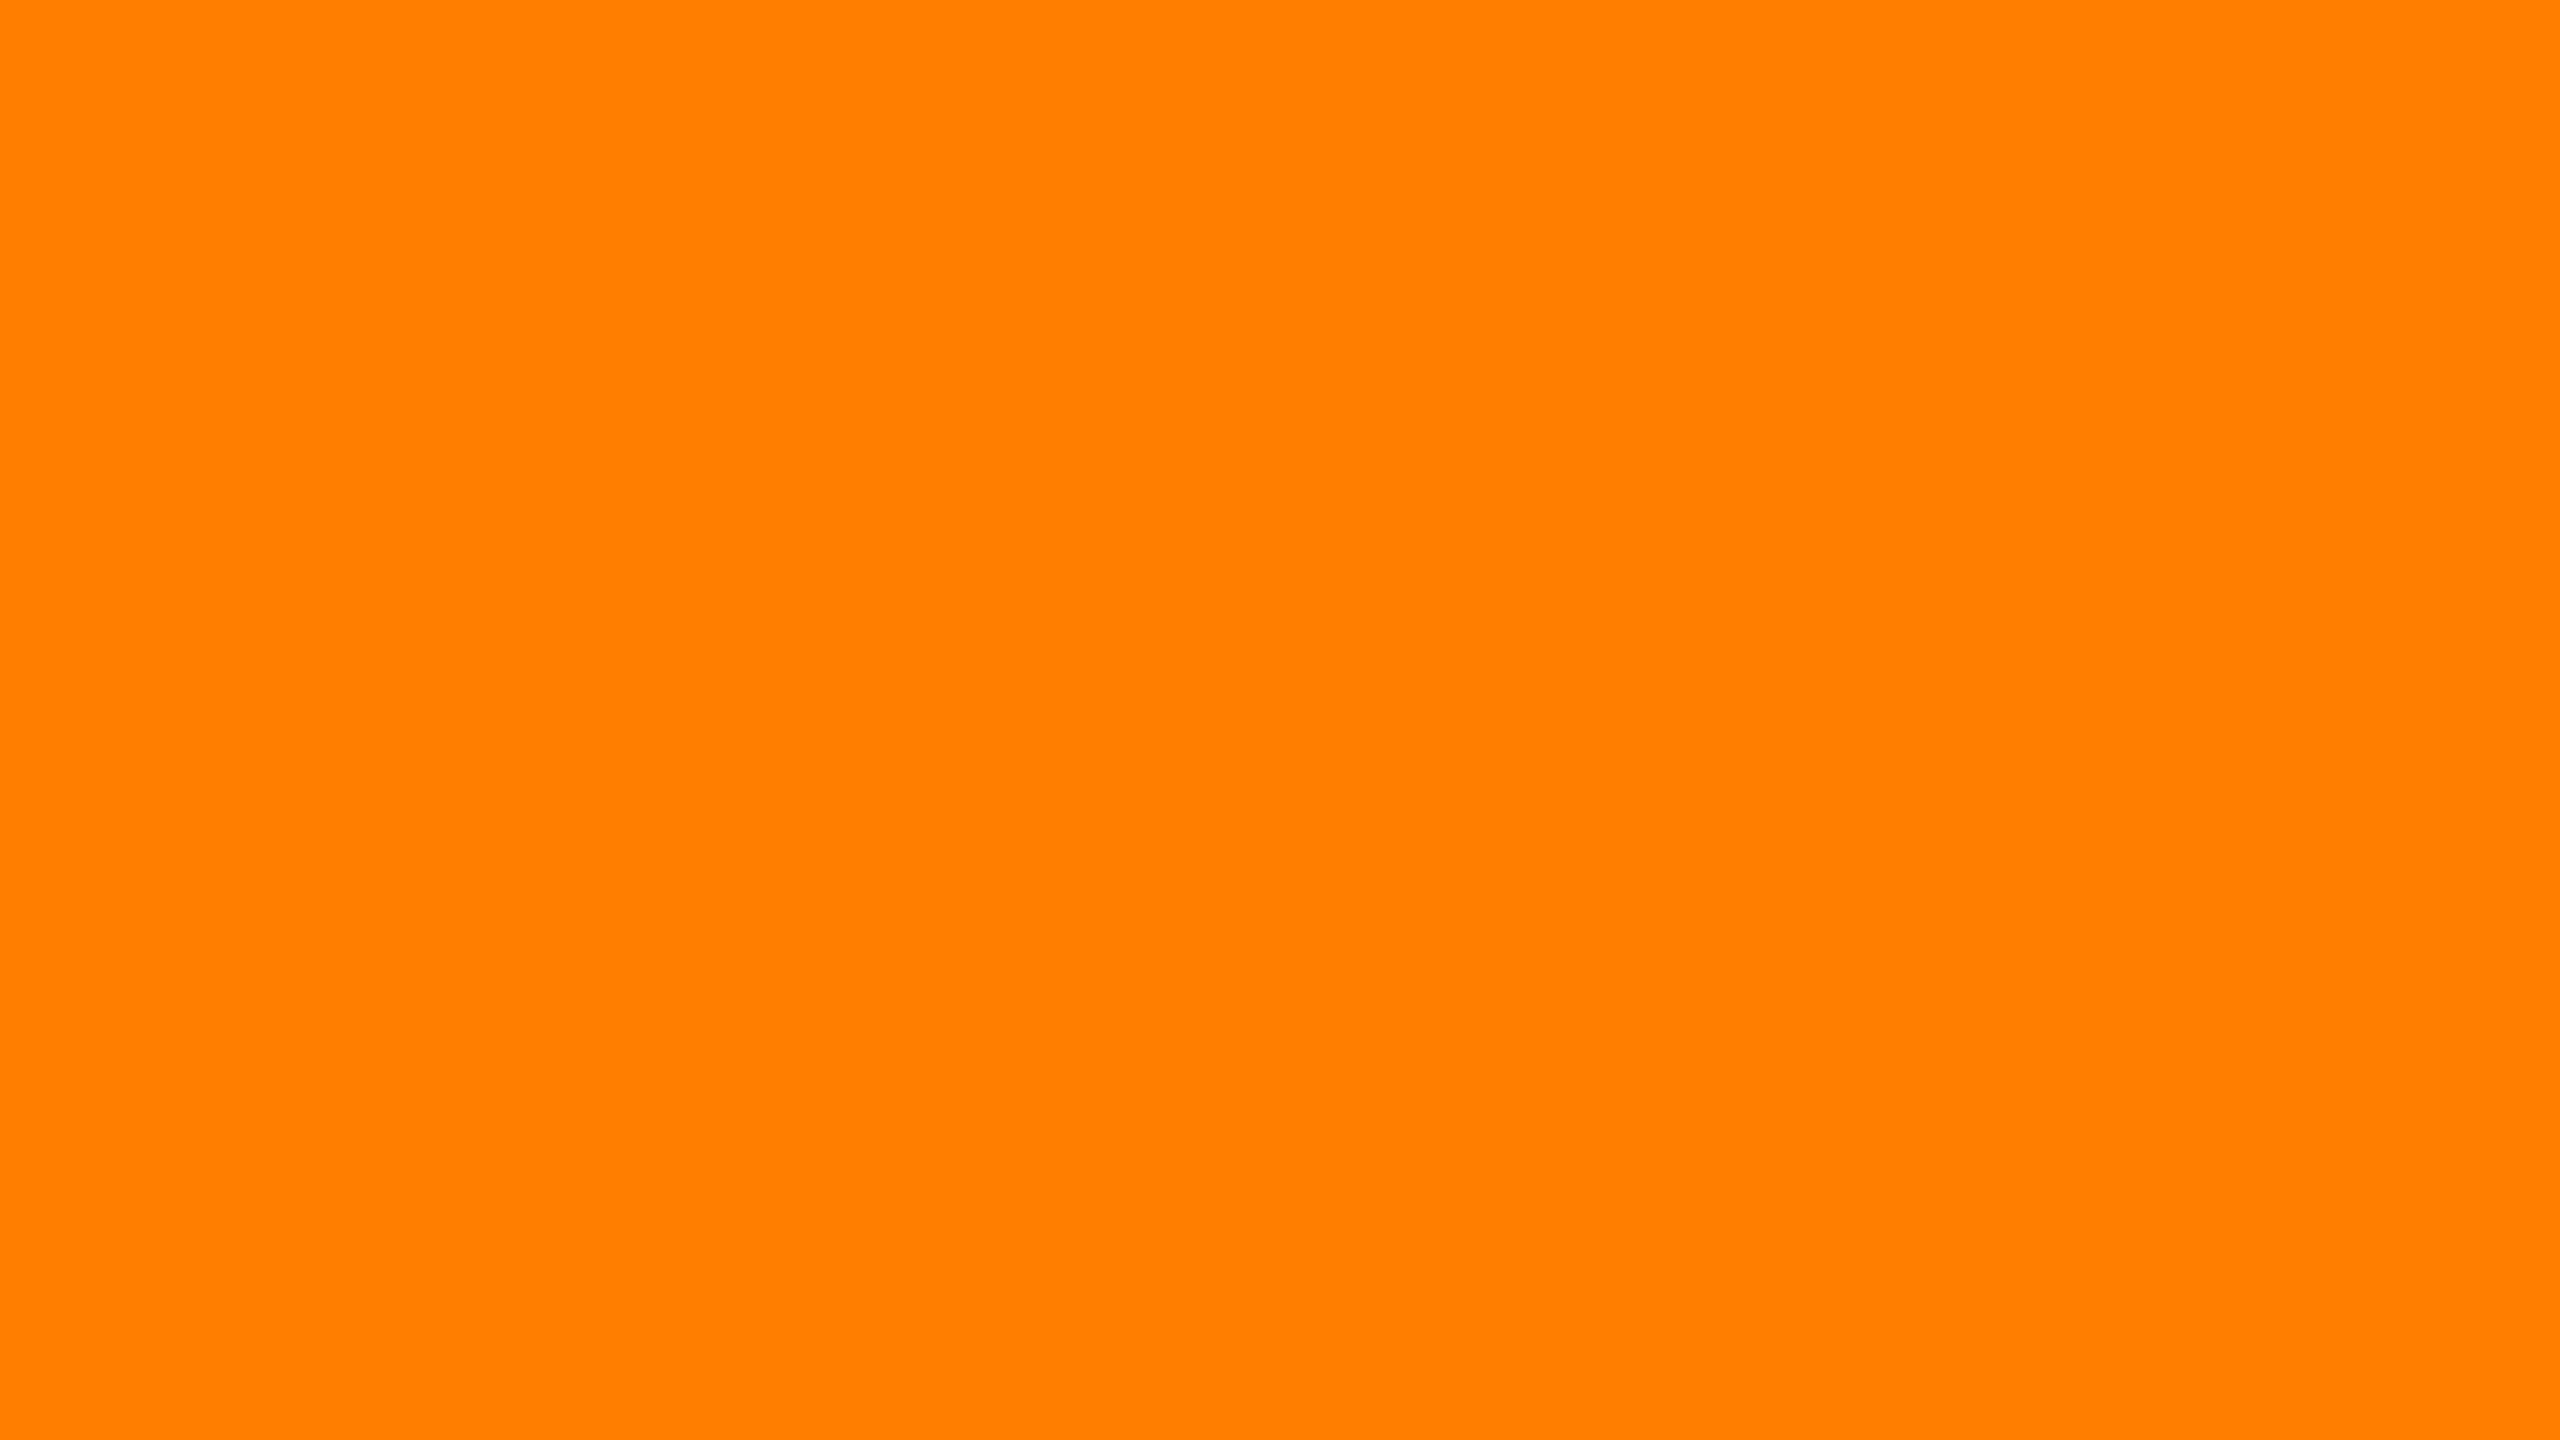 2560x1440 2560Ã1440-amber-orange-solid-color-background.jpg